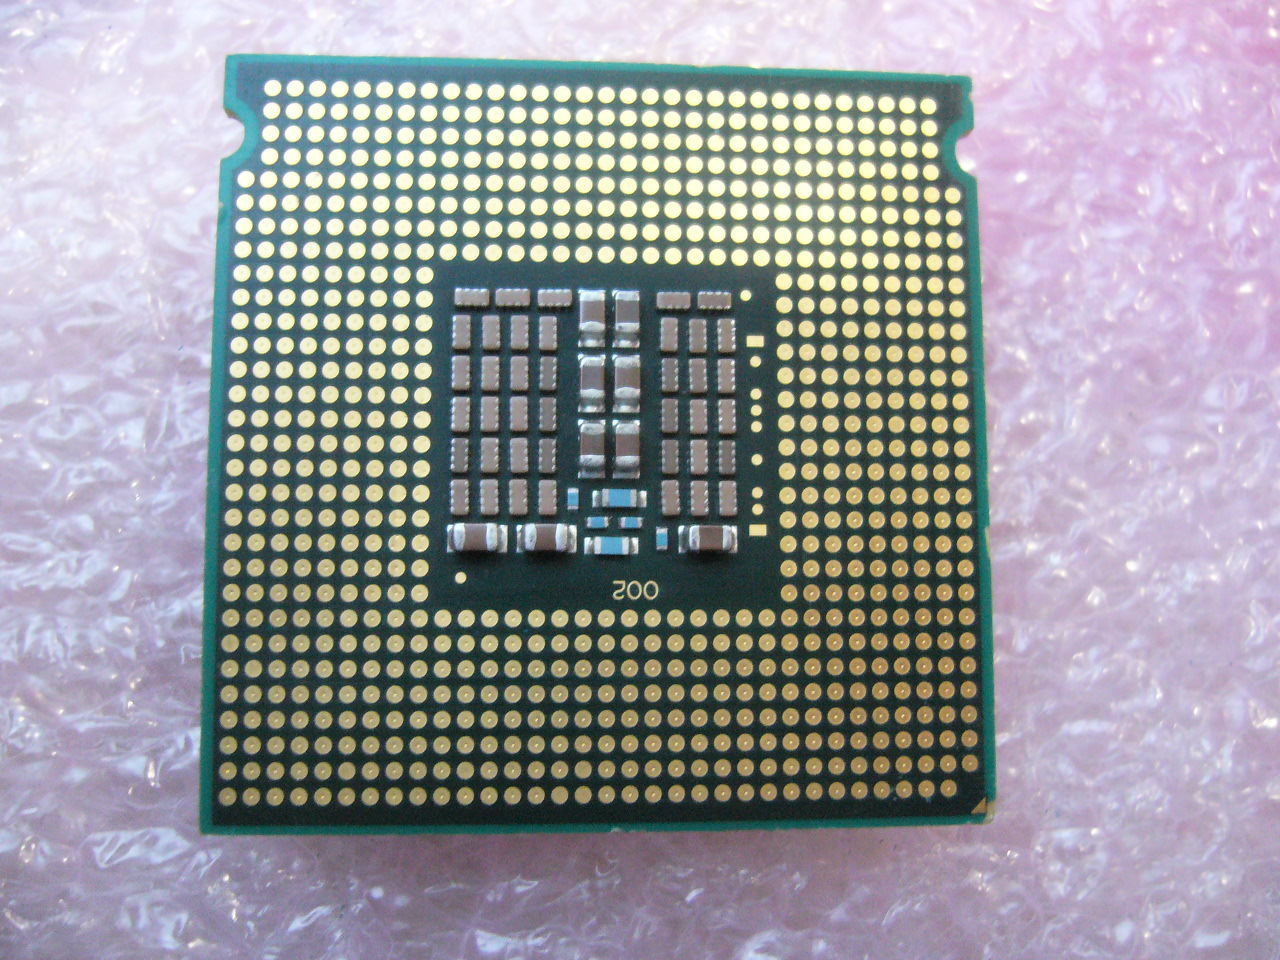 QTY 1x Intel Xeon CPU Quad Core L5430 2.66Ghz/12MB/1333Mhz LGA771 SLBBQ 50W - zum Schließen ins Bild klicken